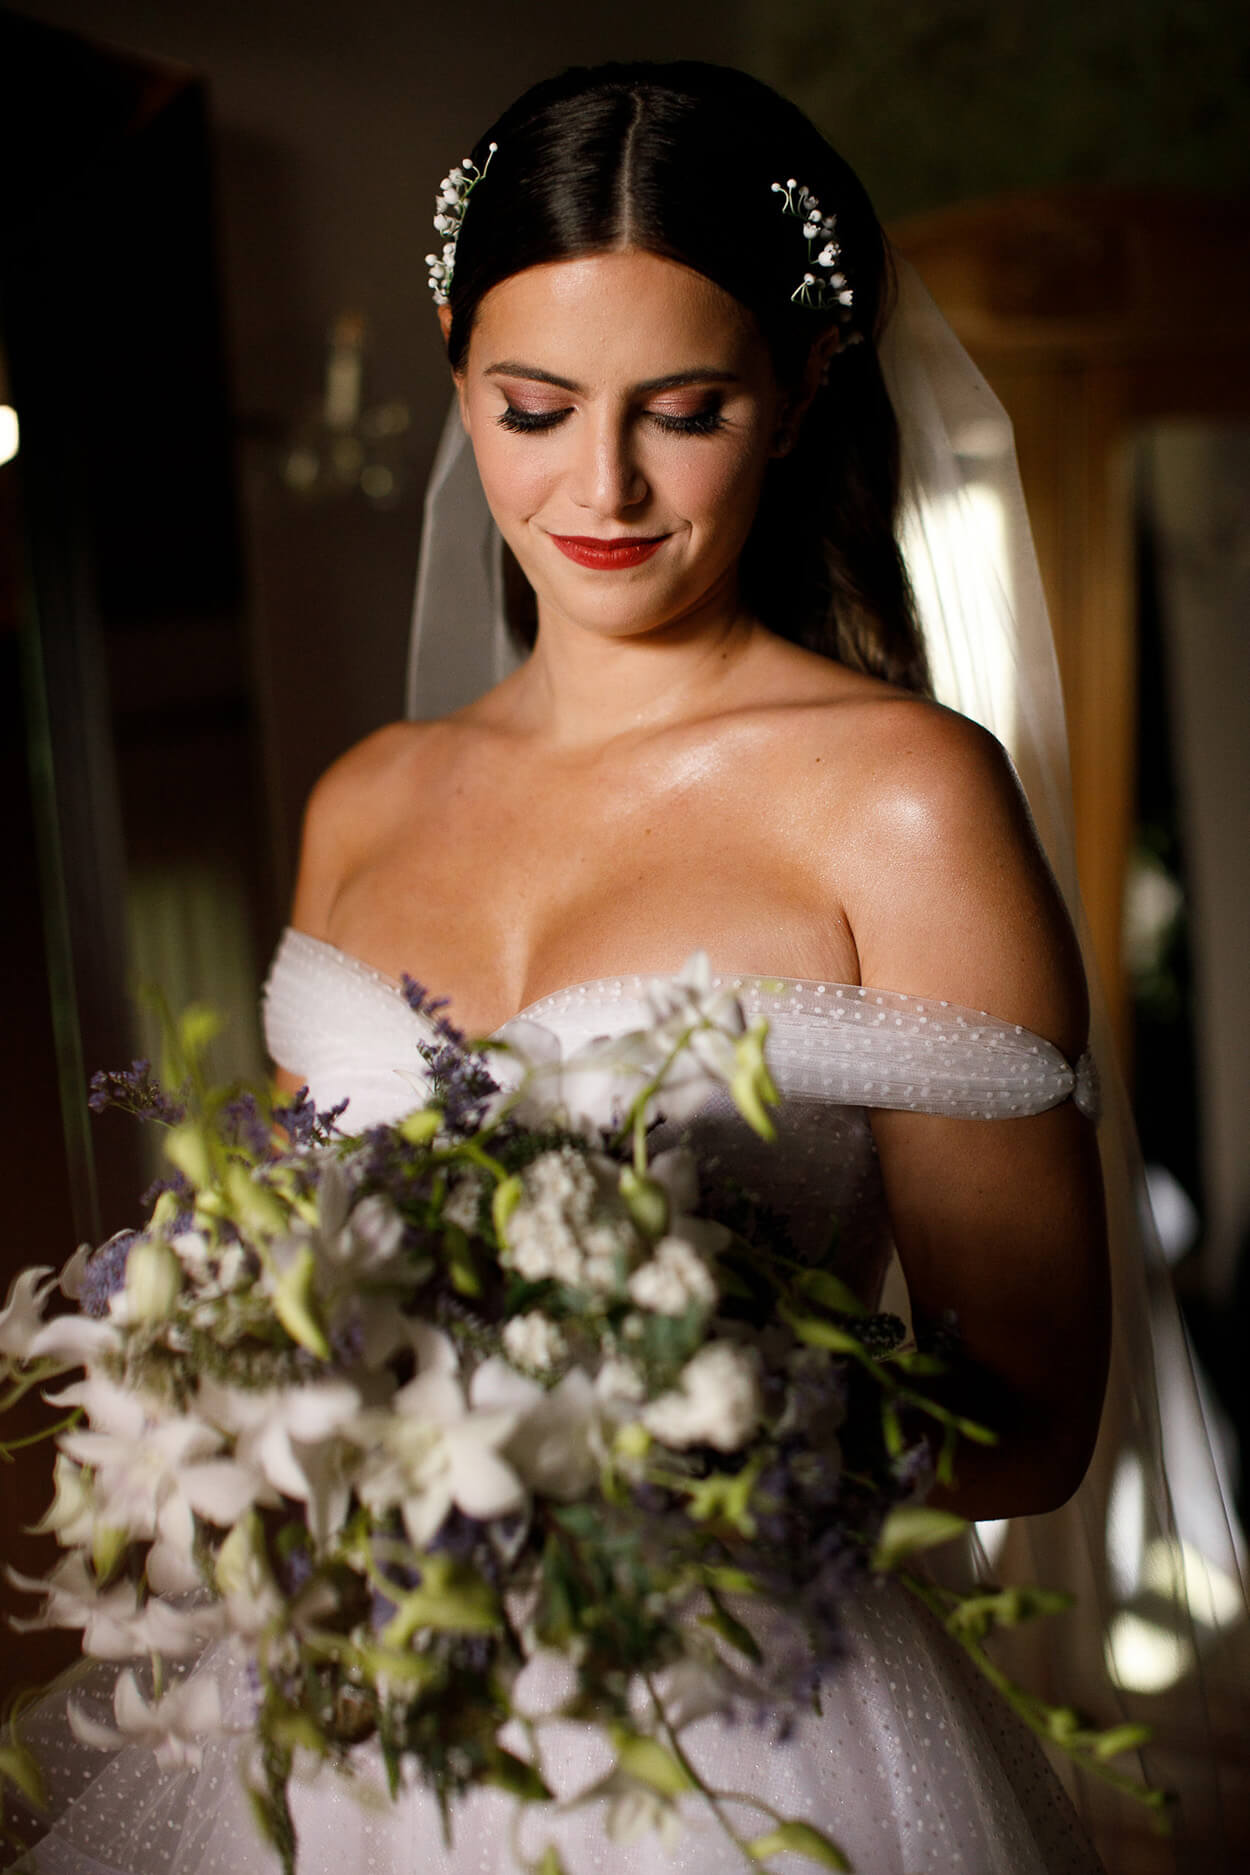 Mulher com vetsido de noiva com decote e alças nos ombos segurando buquê branco e lilás